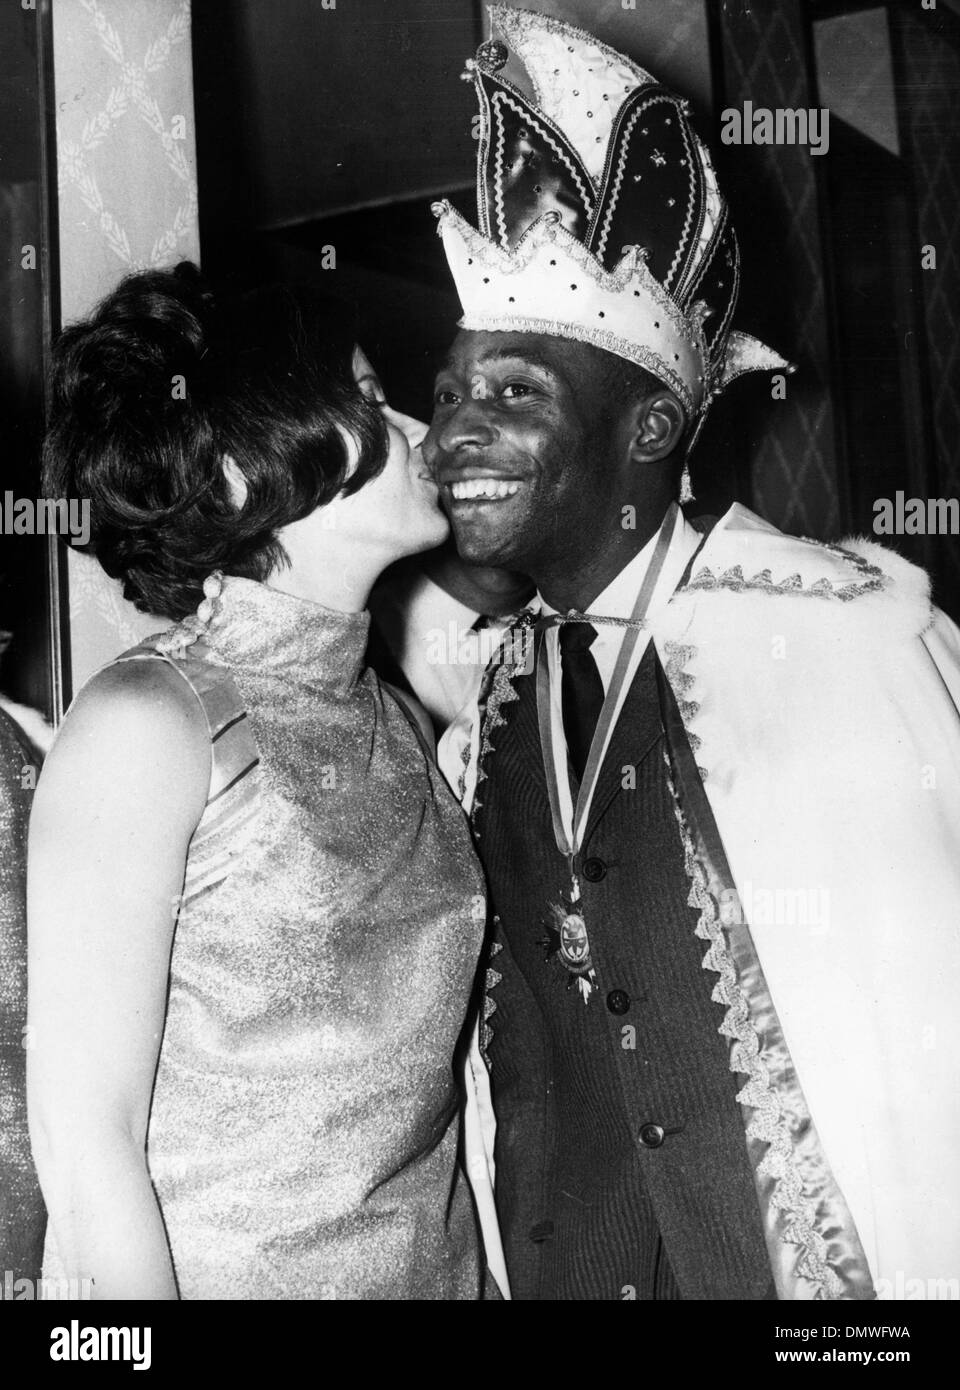 Febbraio 23, 1968 - Monaco di Baviera, Germania - calciatore brasiliano Pelé è baciato da sua moglie dopo essere stato incoronato Re Carnevale presso lo sportivo della palla a Monaco di Baviera. (Credito Immagine: © Keystone Pictures USA/ZUMAPRESS.com) Foto Stock